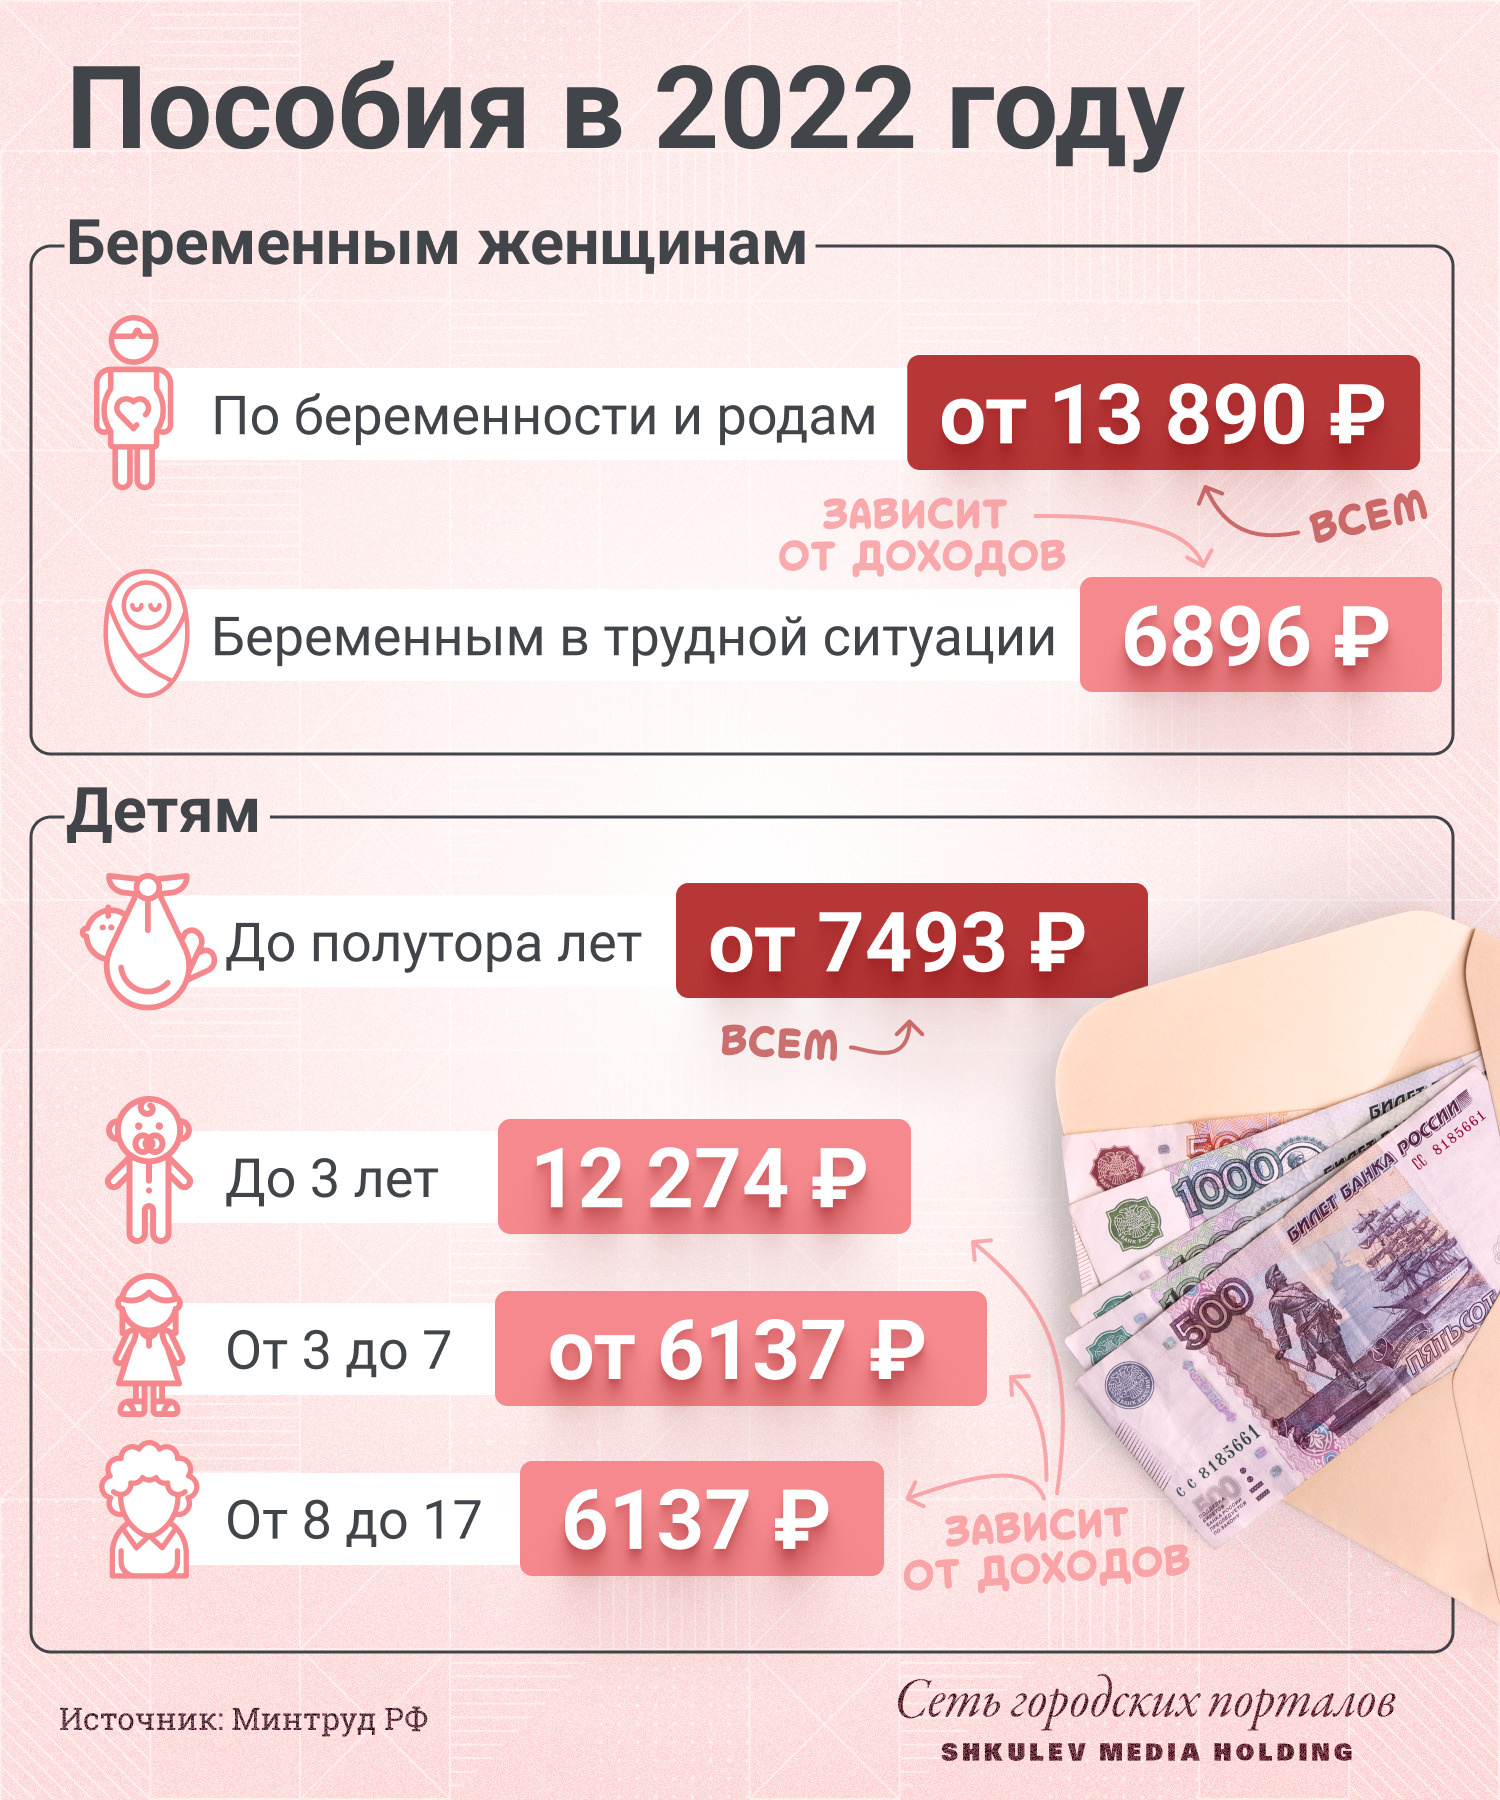 Детские пособия и выплаты в 2022 году: какие новые изменения введены - 11  января 2022 - ФОНТАНКА.ру